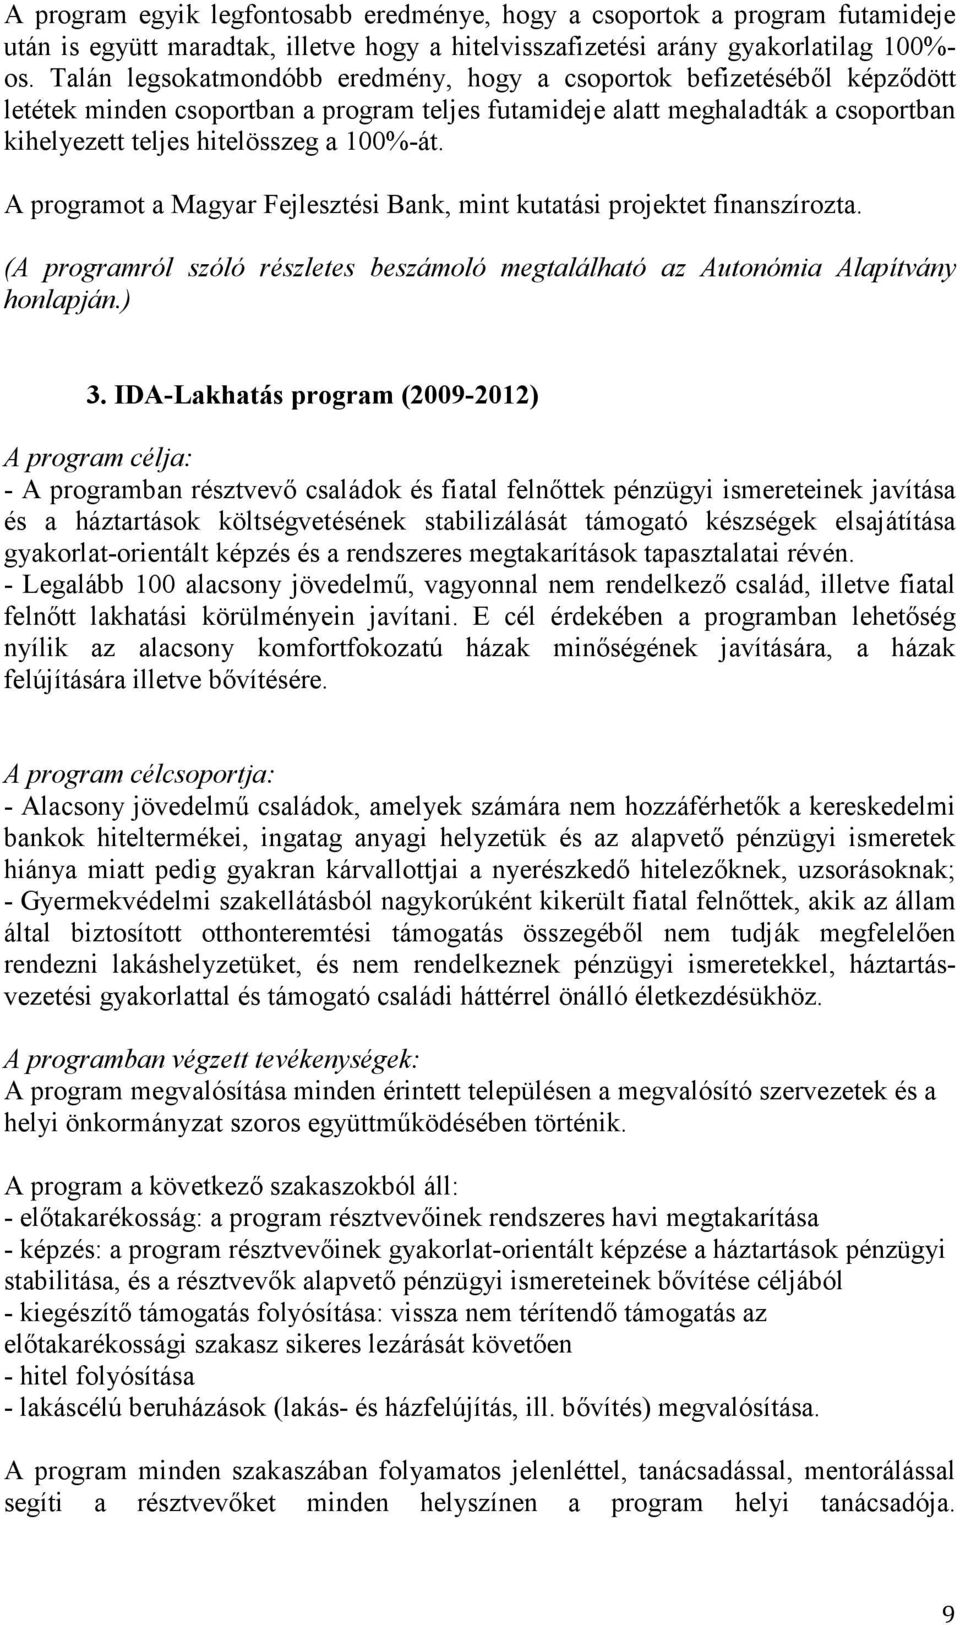 A programot a Magyar Fejlesztési Bank, mint kutatási projektet finanszírozta. (A programról szóló részletes beszámoló megtalálható az Autonómia Alapítvány honlapján.) 3.